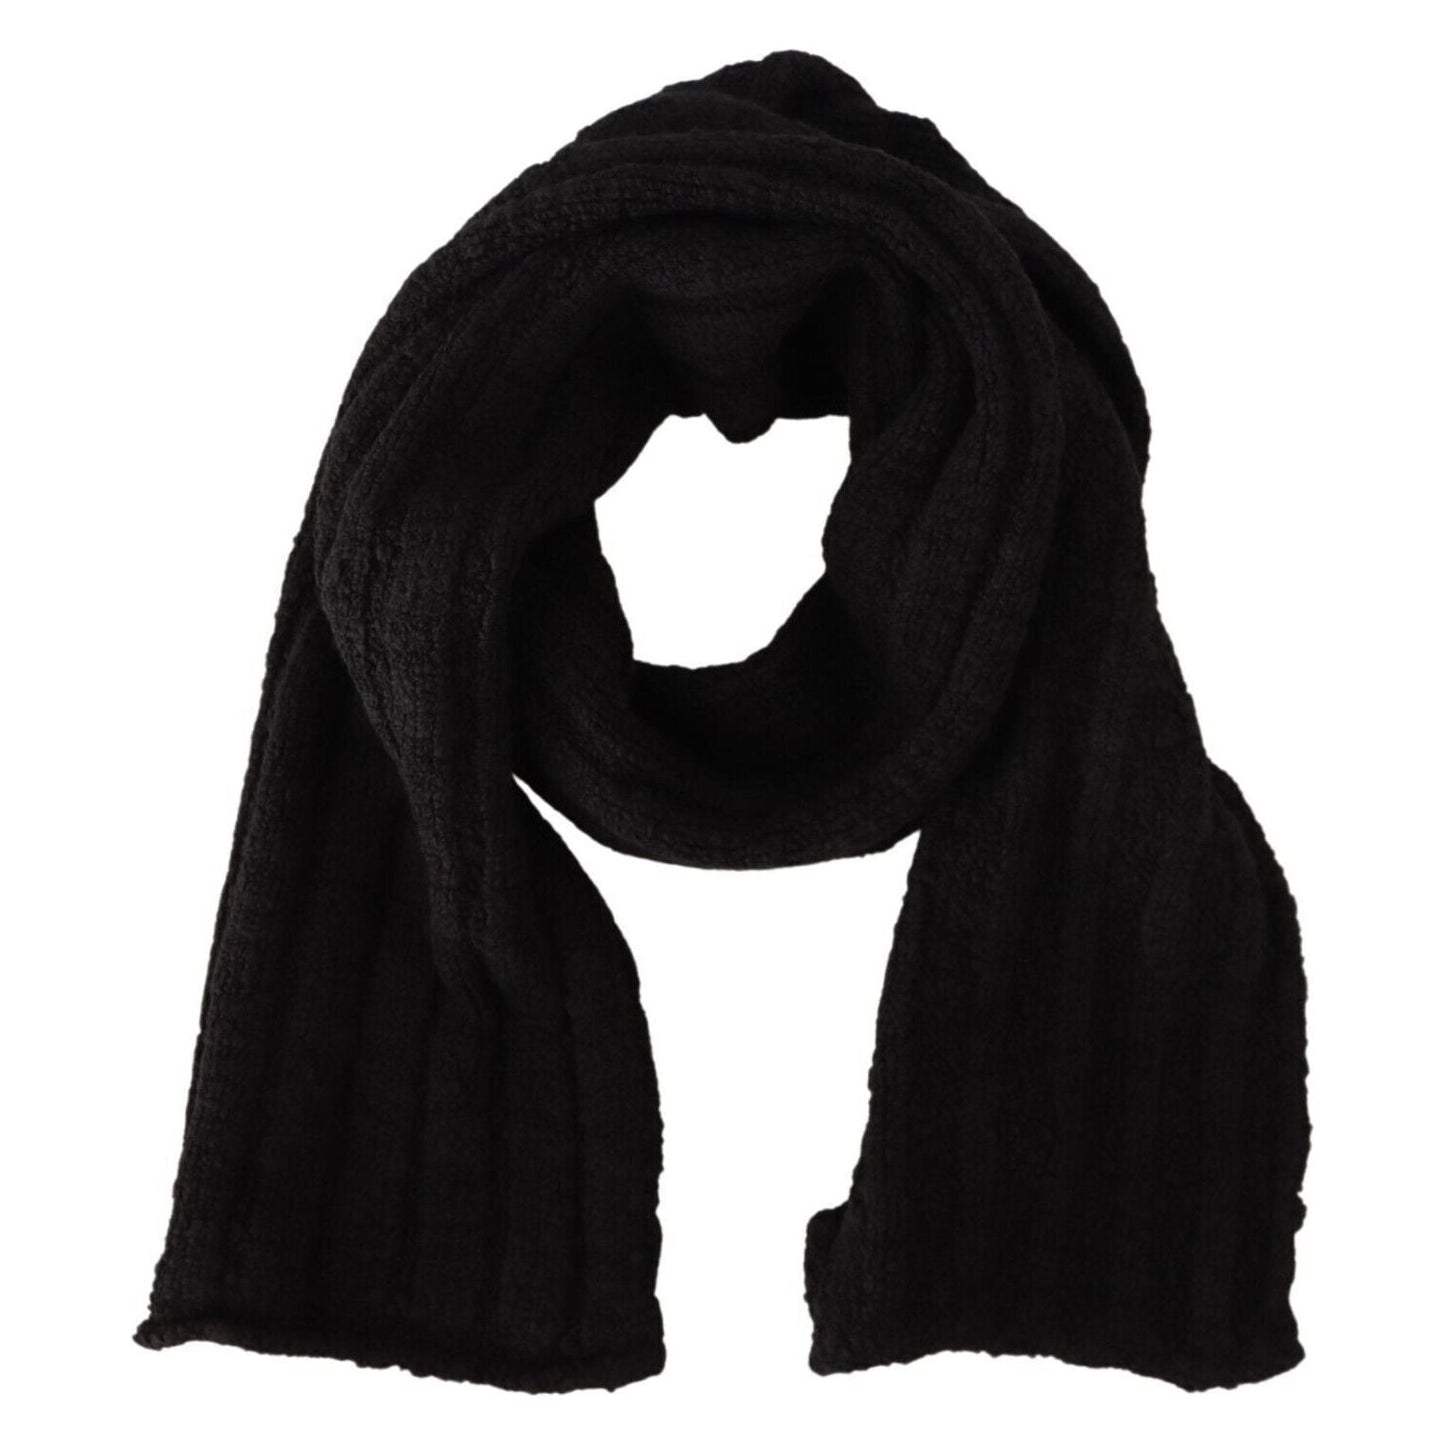 Dolce & Gabbana Elegance Unleashed Black Wool Scarf black-virgin-wool-knitted-unisex-warmer-shawl-scarf